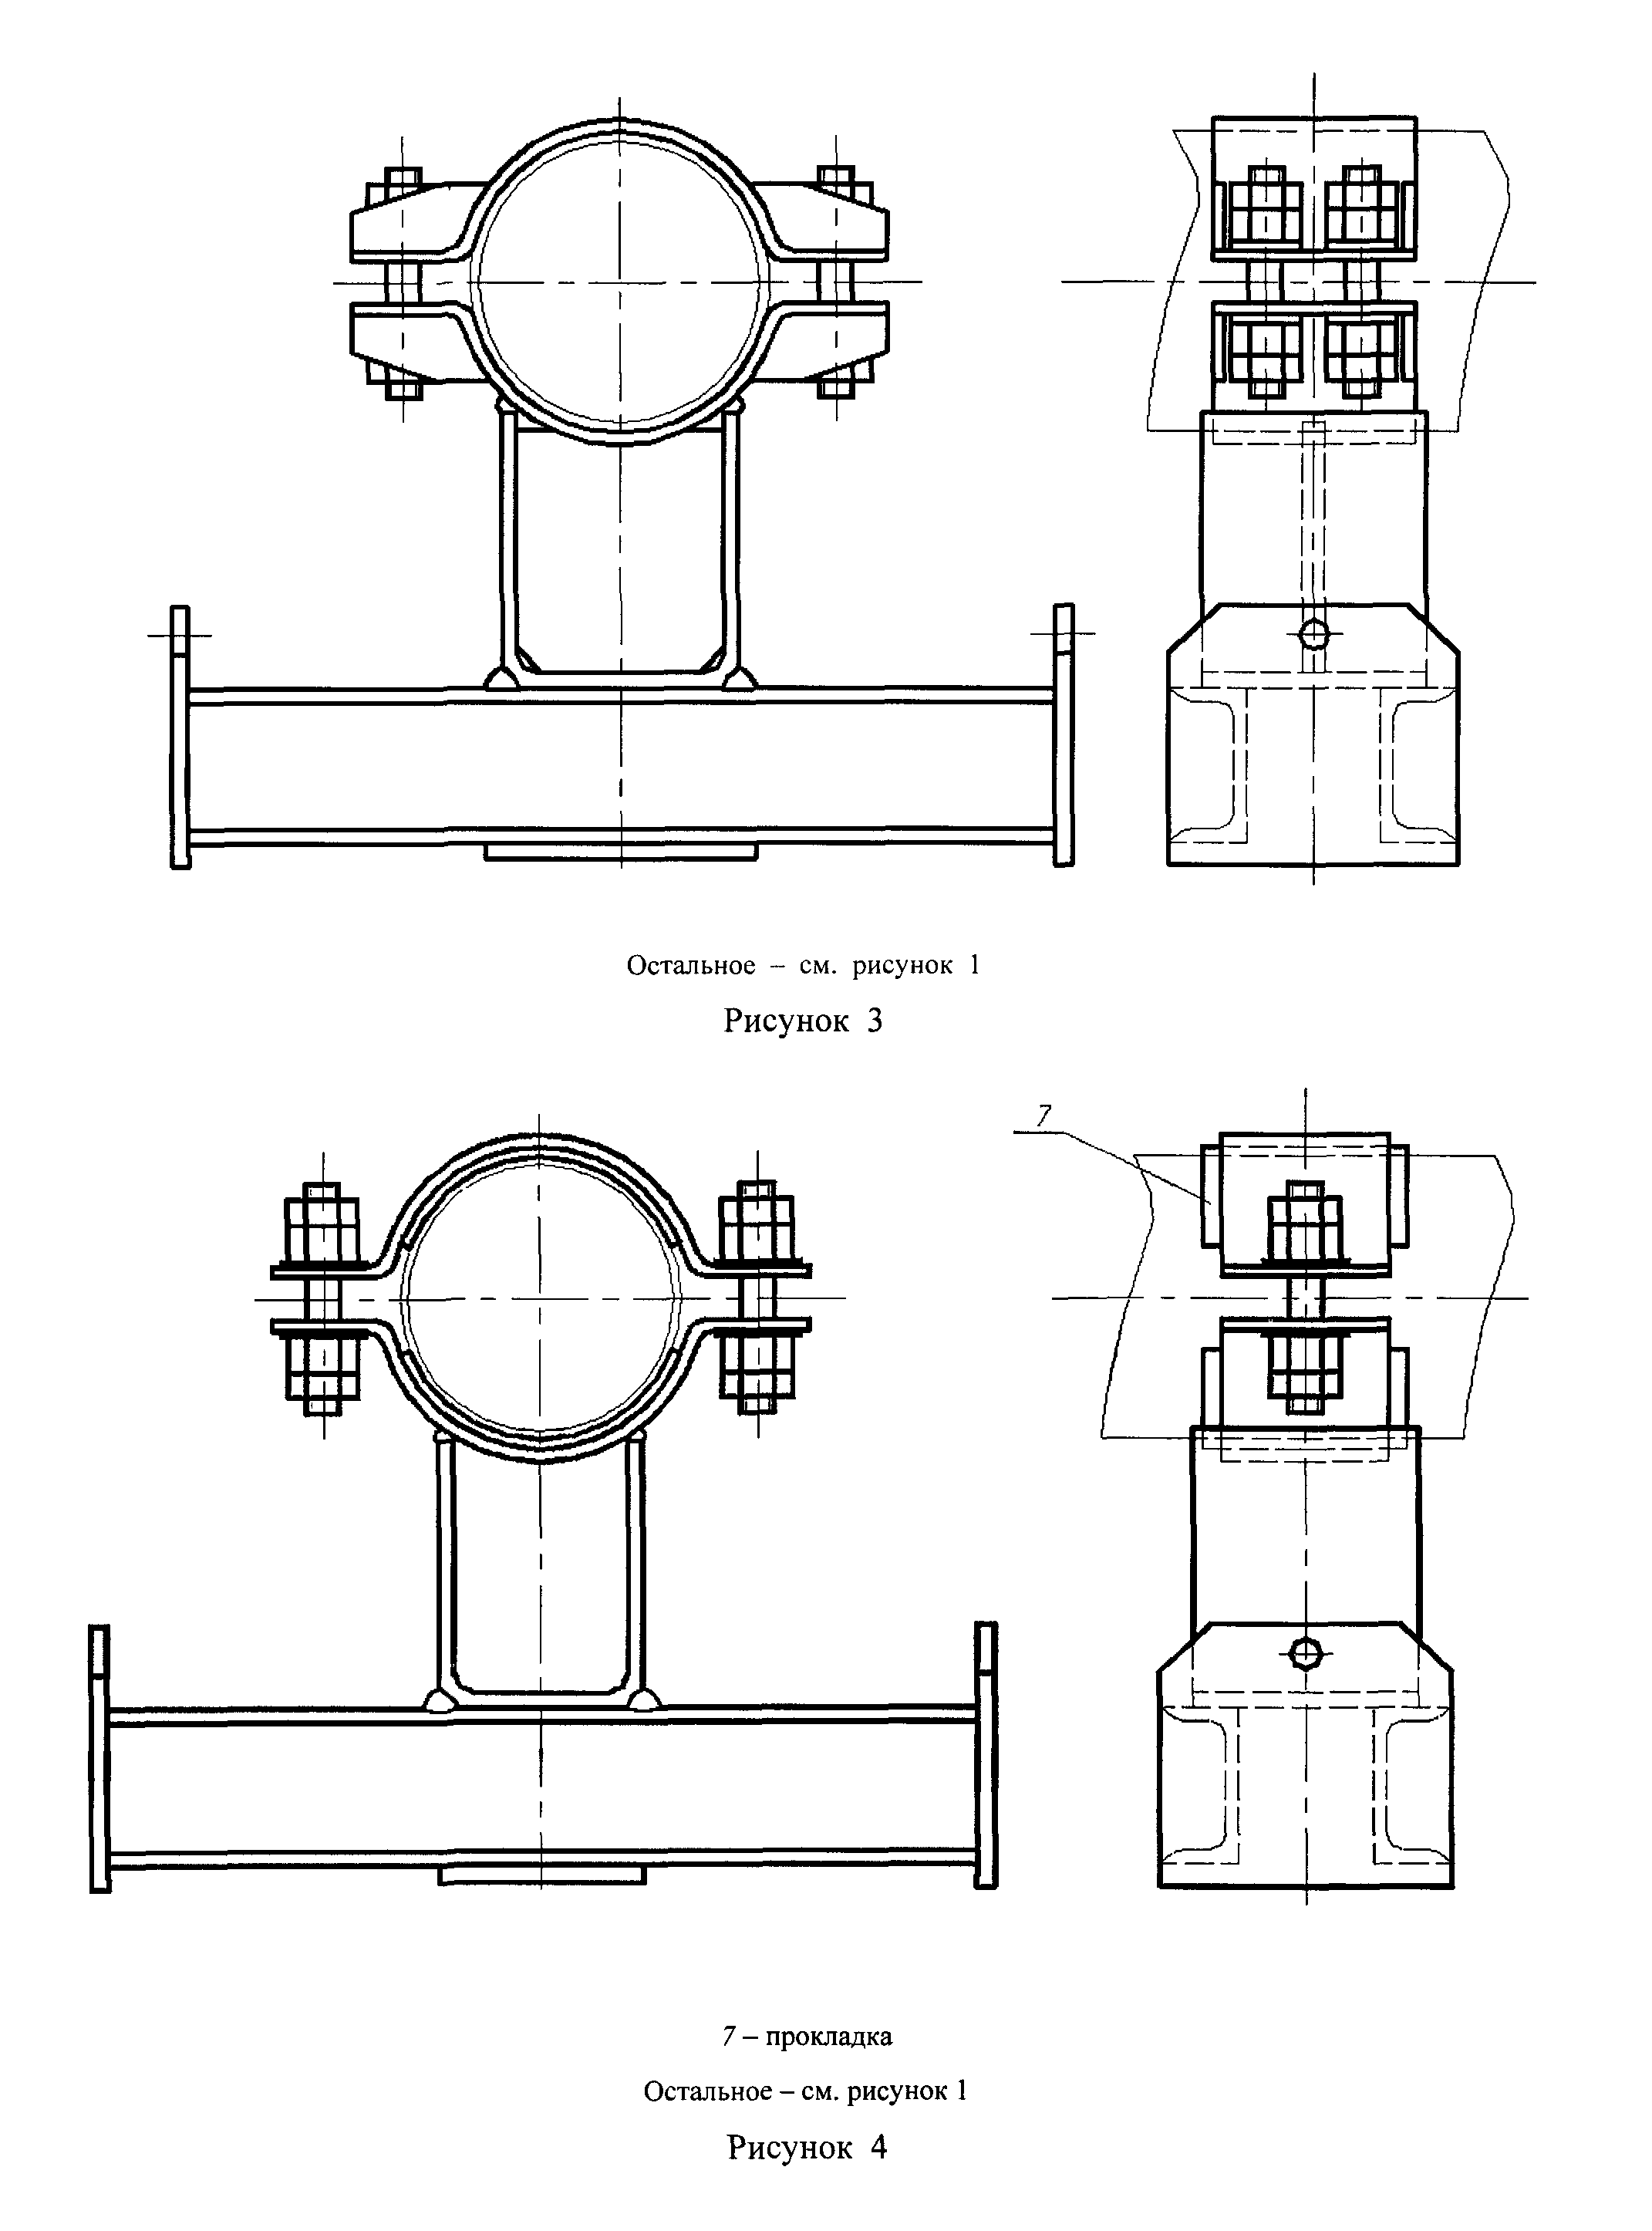 Рабочие чертежи 2. Подвески хомутовые на опорной балке с проушинами ОСТ 24.125.118-01